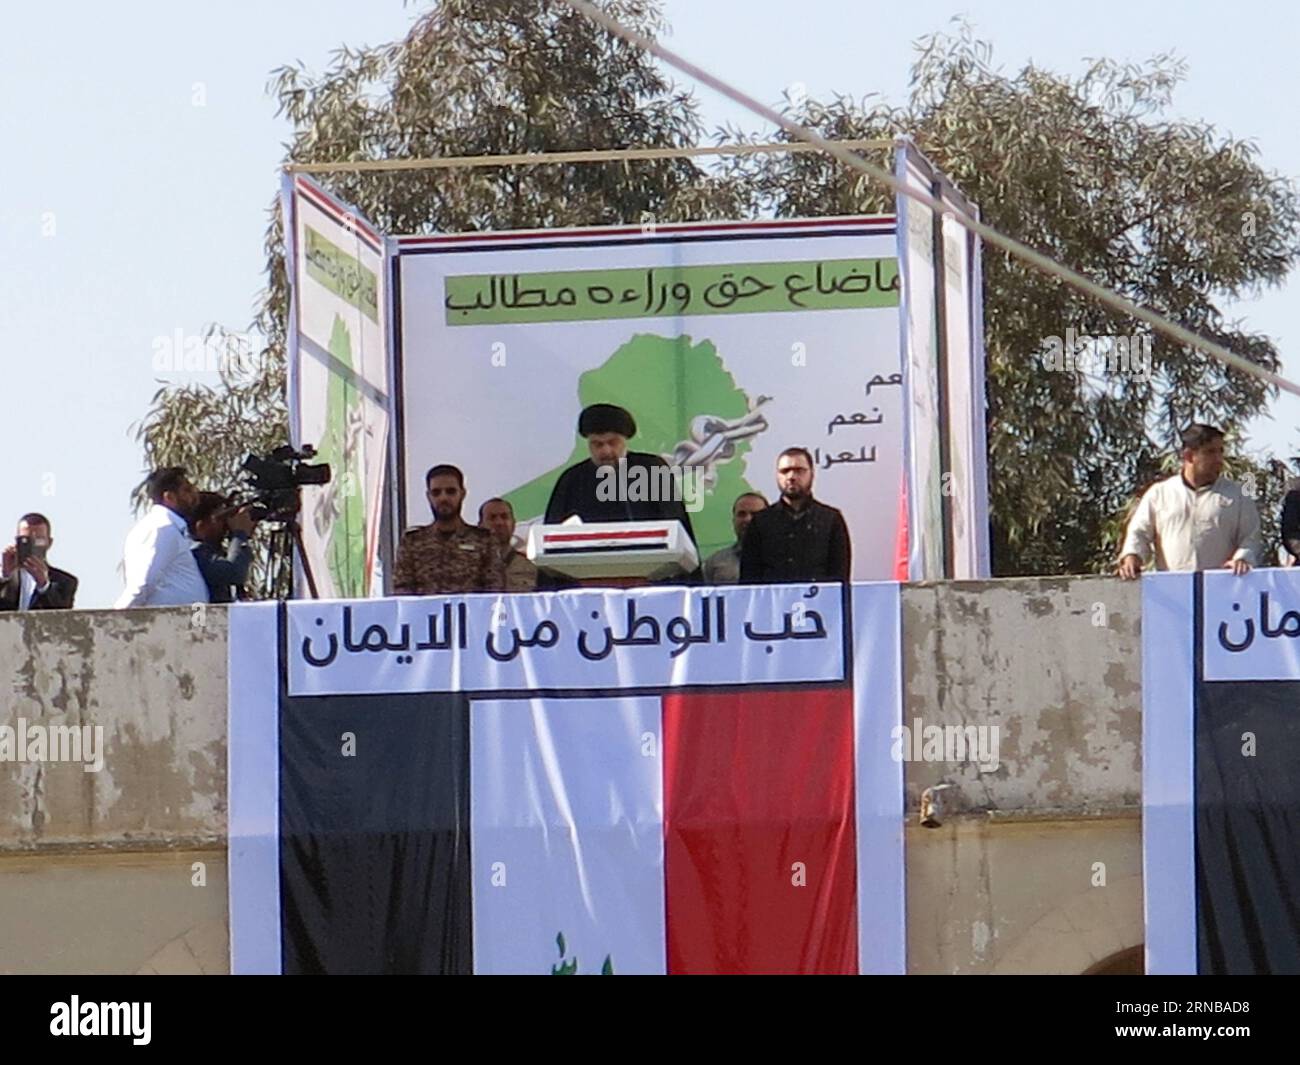 (160226) -- BAGDAD, 26. Februar 2016 -- der irakische schiitische Geistliche Muqtada al-Sadr (C) hält eine Rede während einer Demonstration gegen Korruption auf dem Tahrir-Platz in Bagdad, Irak, am 26. Februar 2016. Khalil) IRAK-BAGDAD-DEMONSTRATION Dawood PUBLICATIONxNOTxINxCHN Bagdad Feb 26 2016 irakischer Shi ITE-Kleriker Muqtada Al Sadr C hält eine Rede während einer Demonstration gegen Korruption AUF DEM Tahrir-Platz in Bagdad Irak AM Februar 26 2016 Khalil Iraq Bagdad Demonstration Dawood PUBLICATIONxNOTxINxCHN Stockfoto